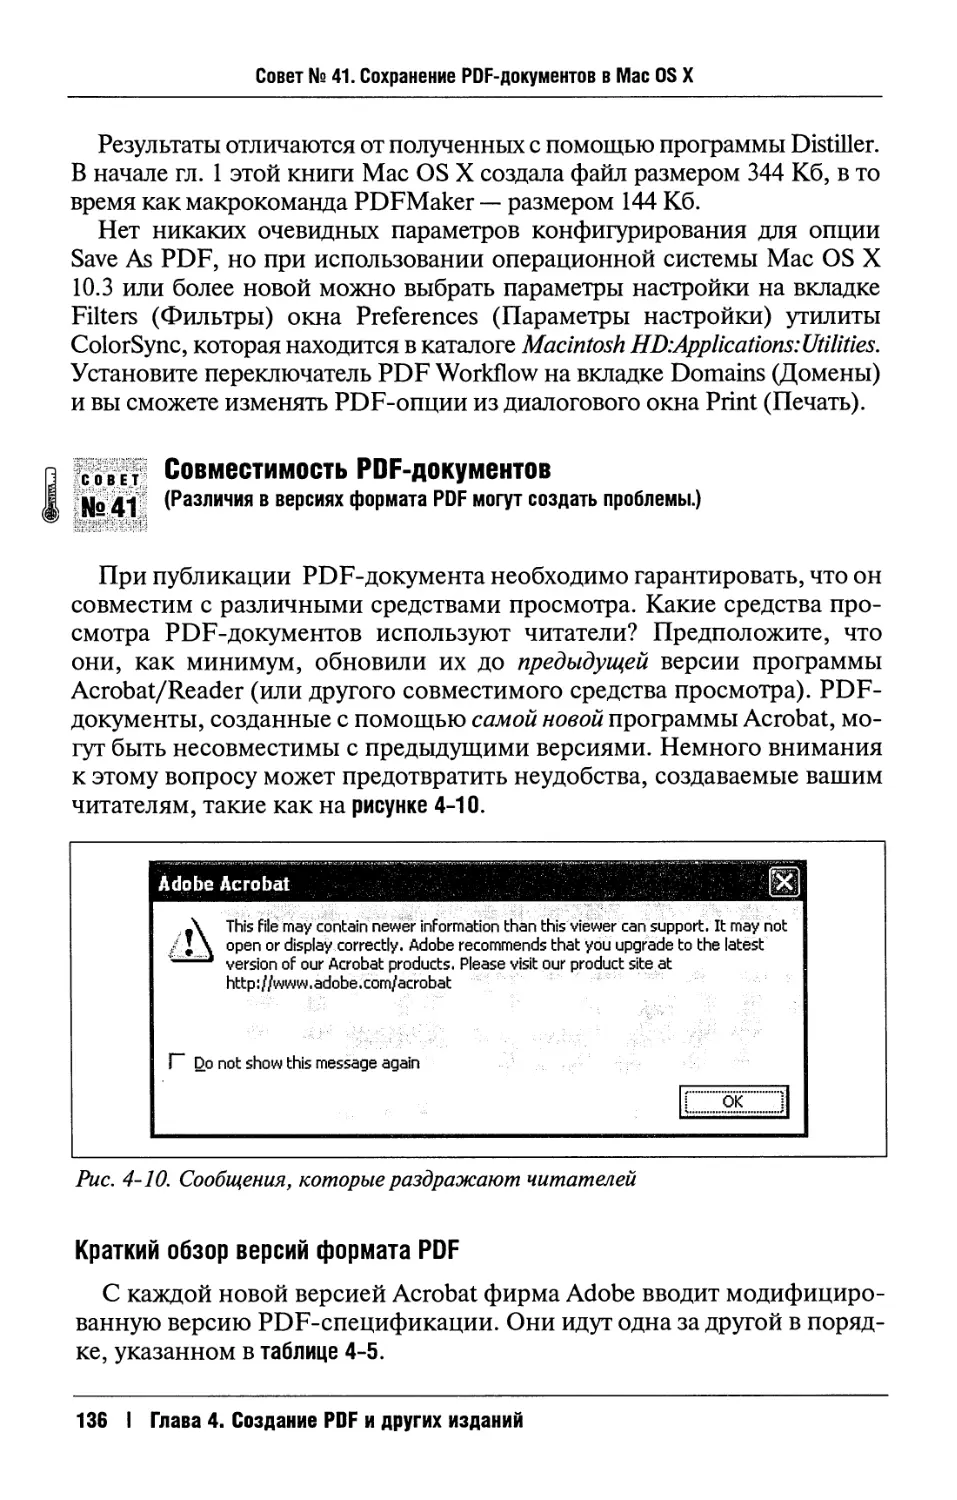 41. Совместимость PDF-документов